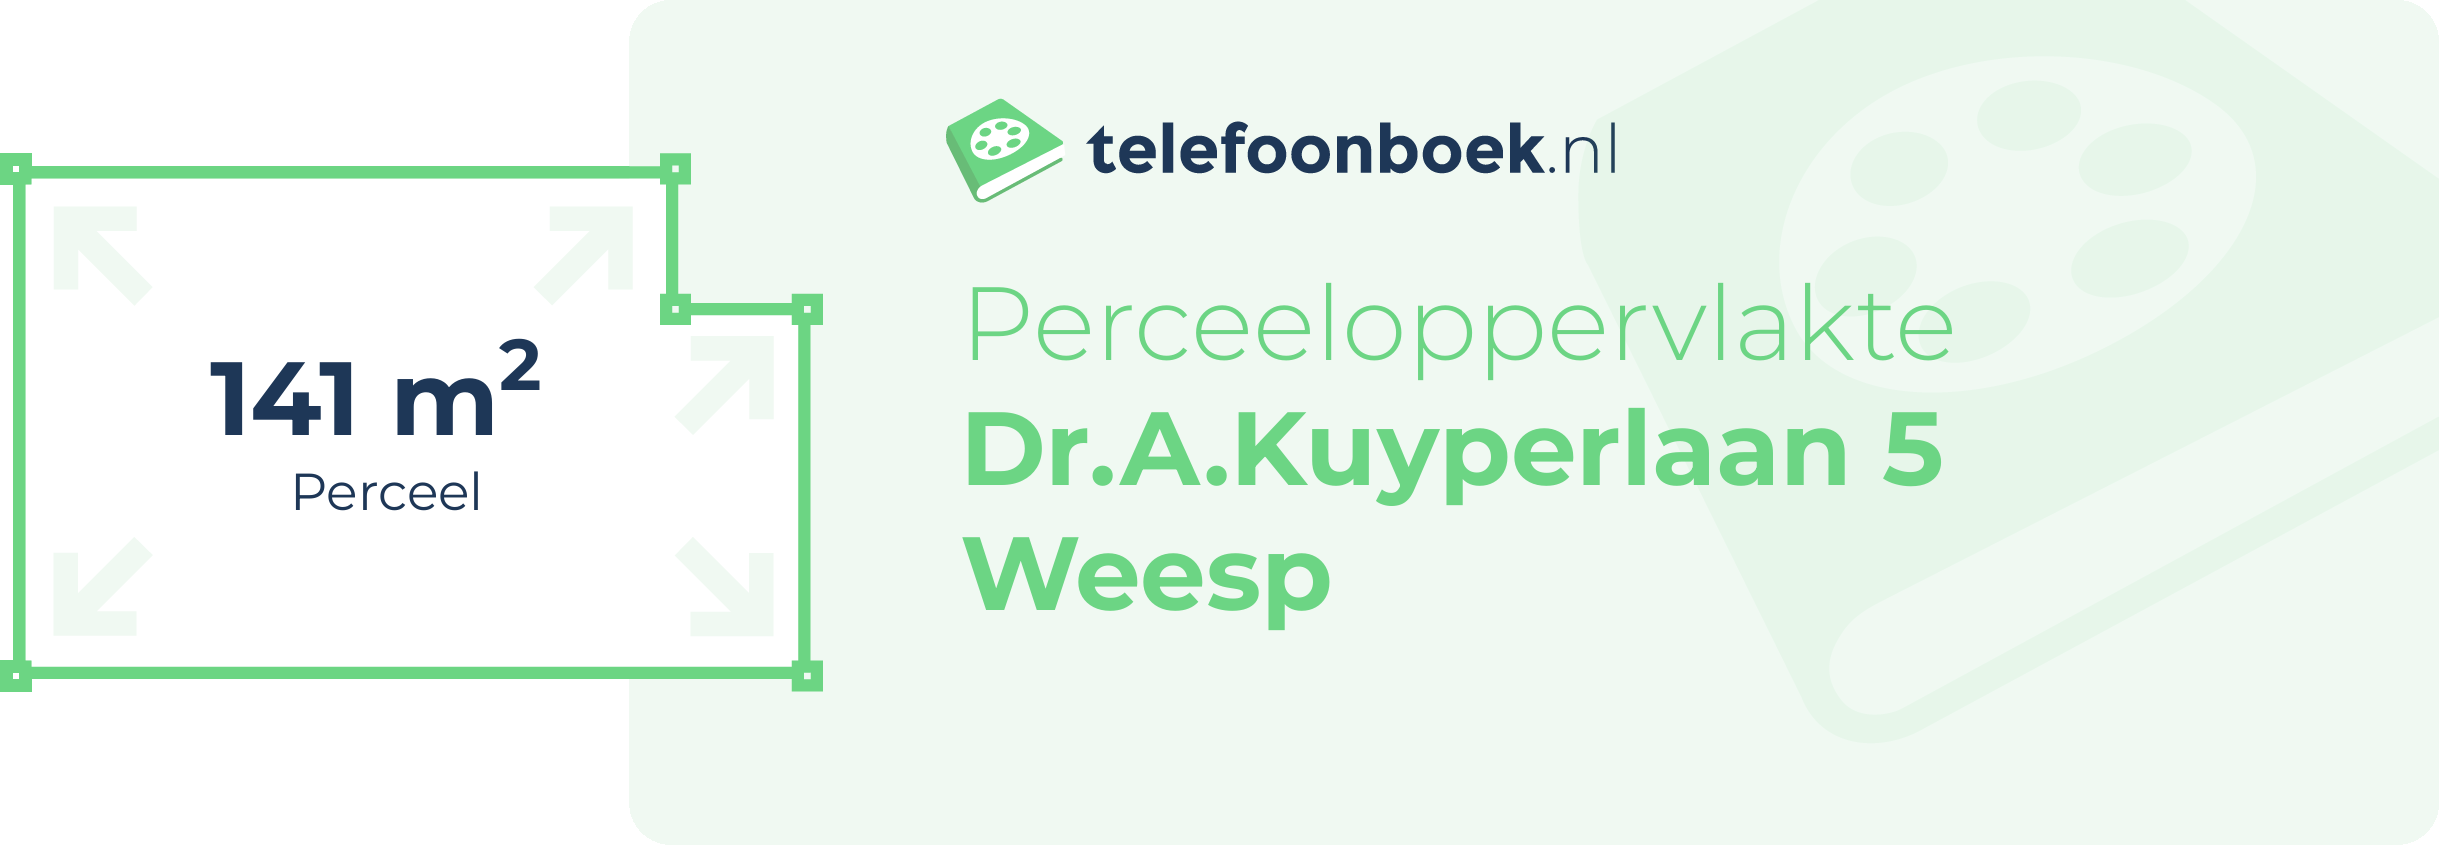 Perceeloppervlakte Dr.A.Kuyperlaan 5 Weesp